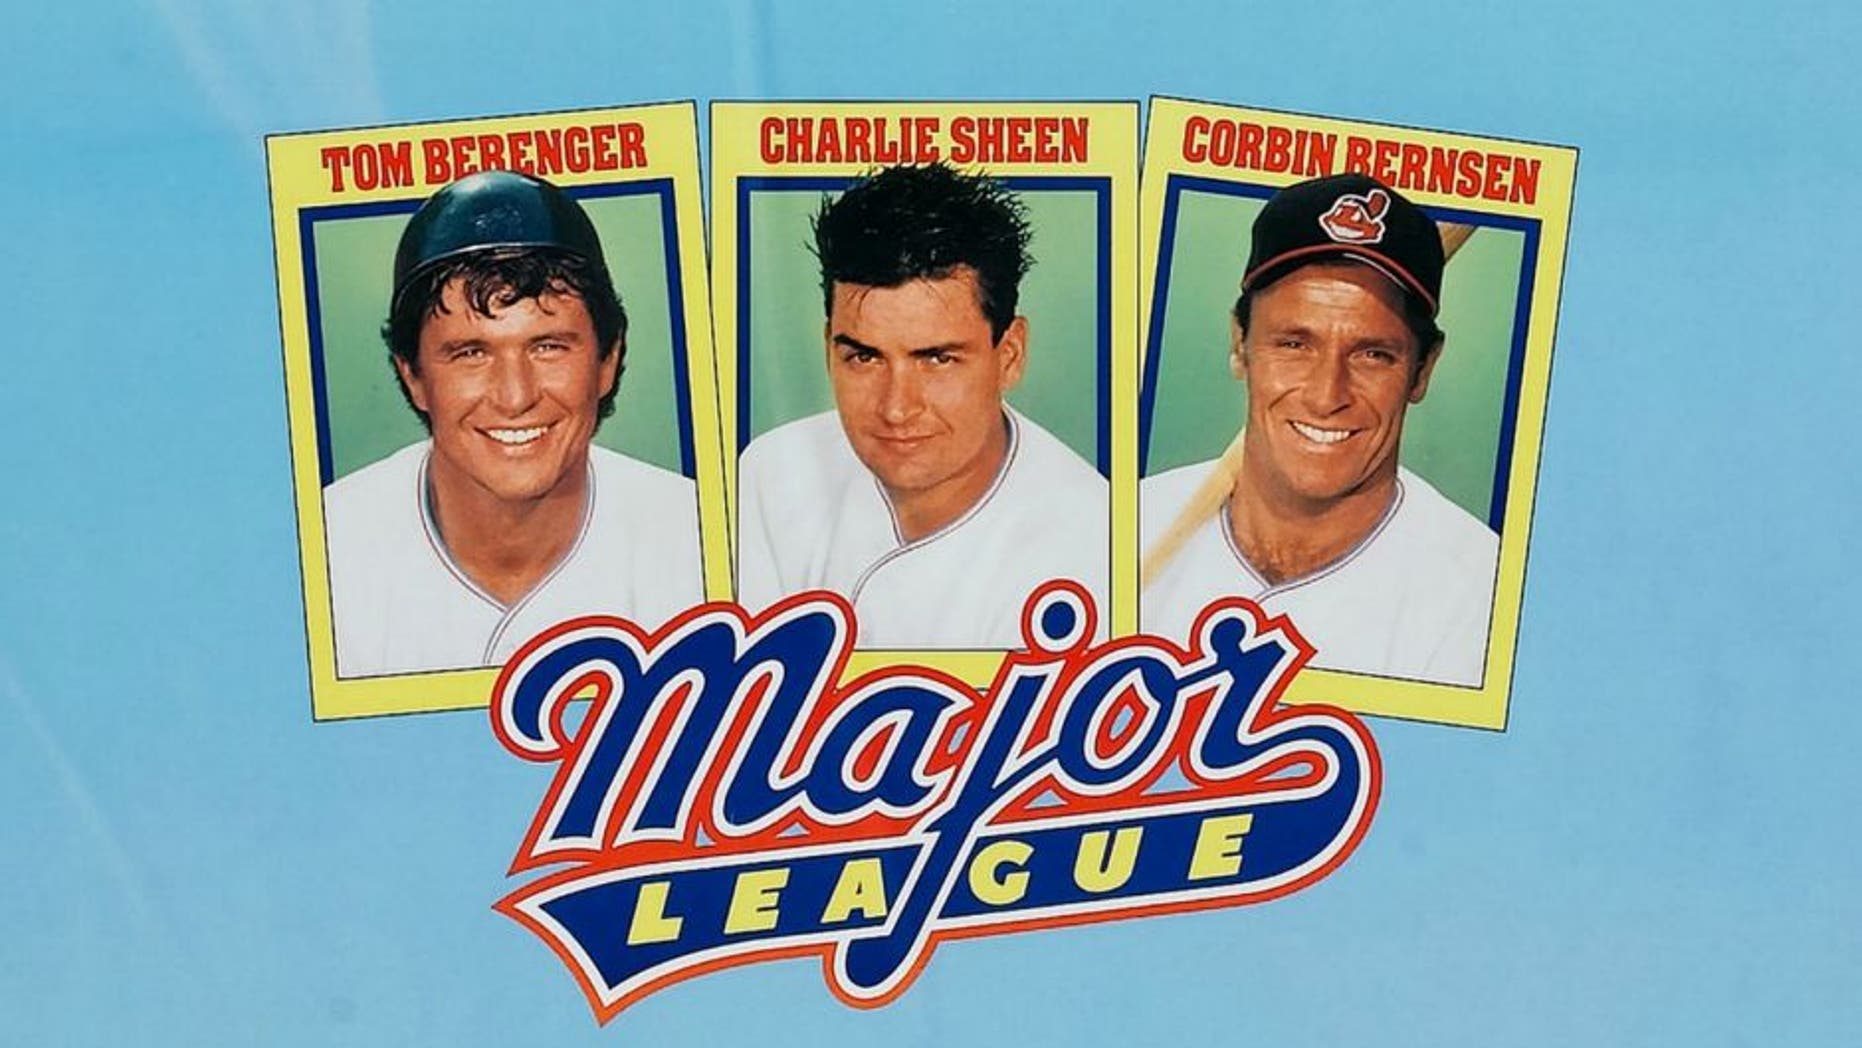 Major League - Rick Vaughn Gets Glasses (HD) - 1989 